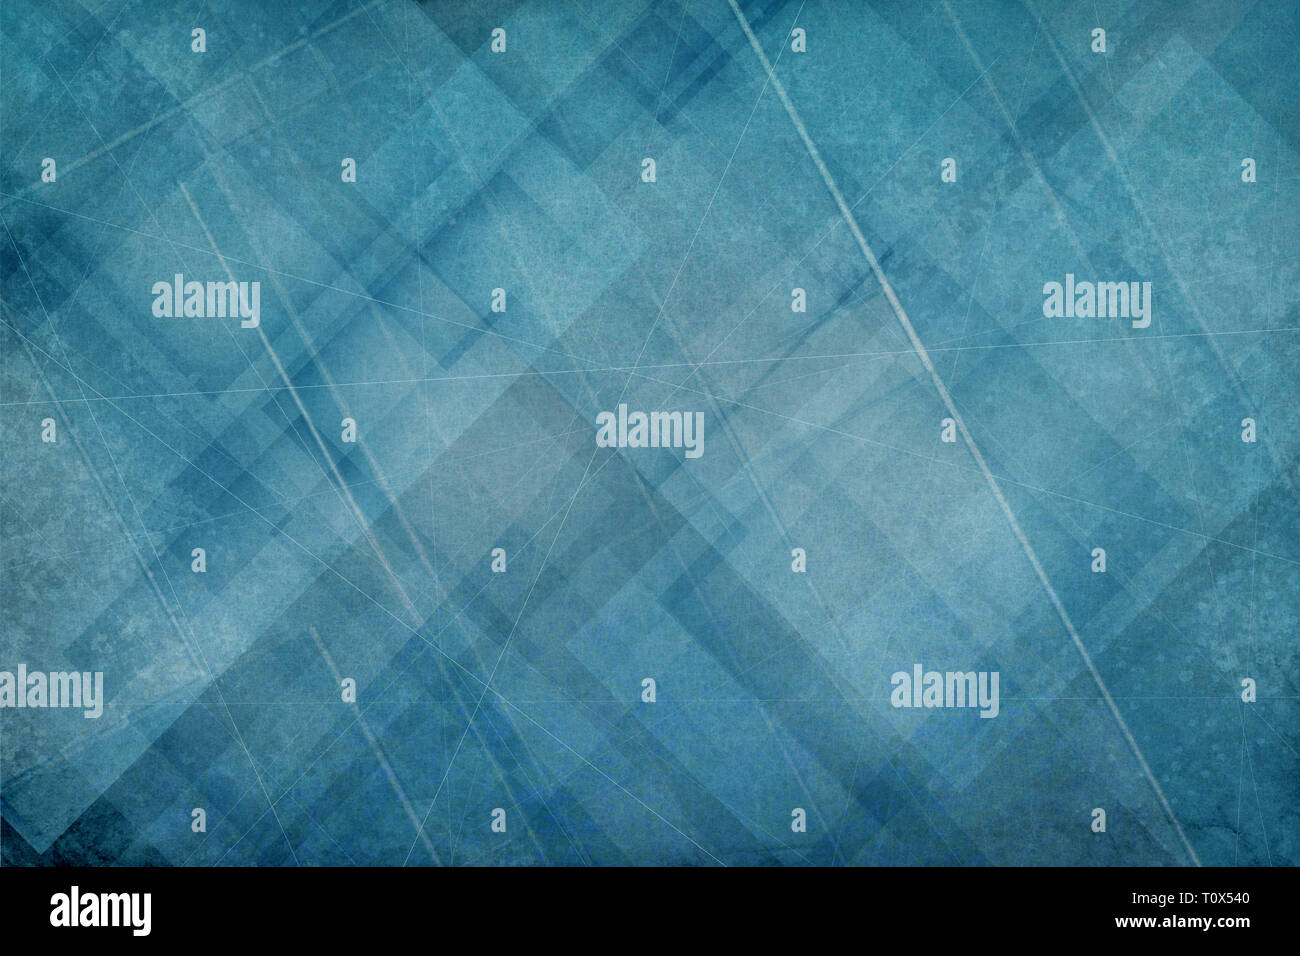 Abstrakt Blau Hintergrund mit Schichten von White Diamond und Dreieck Formen mit zufällige Linien und Scratch mark grunge Textur Stockfoto